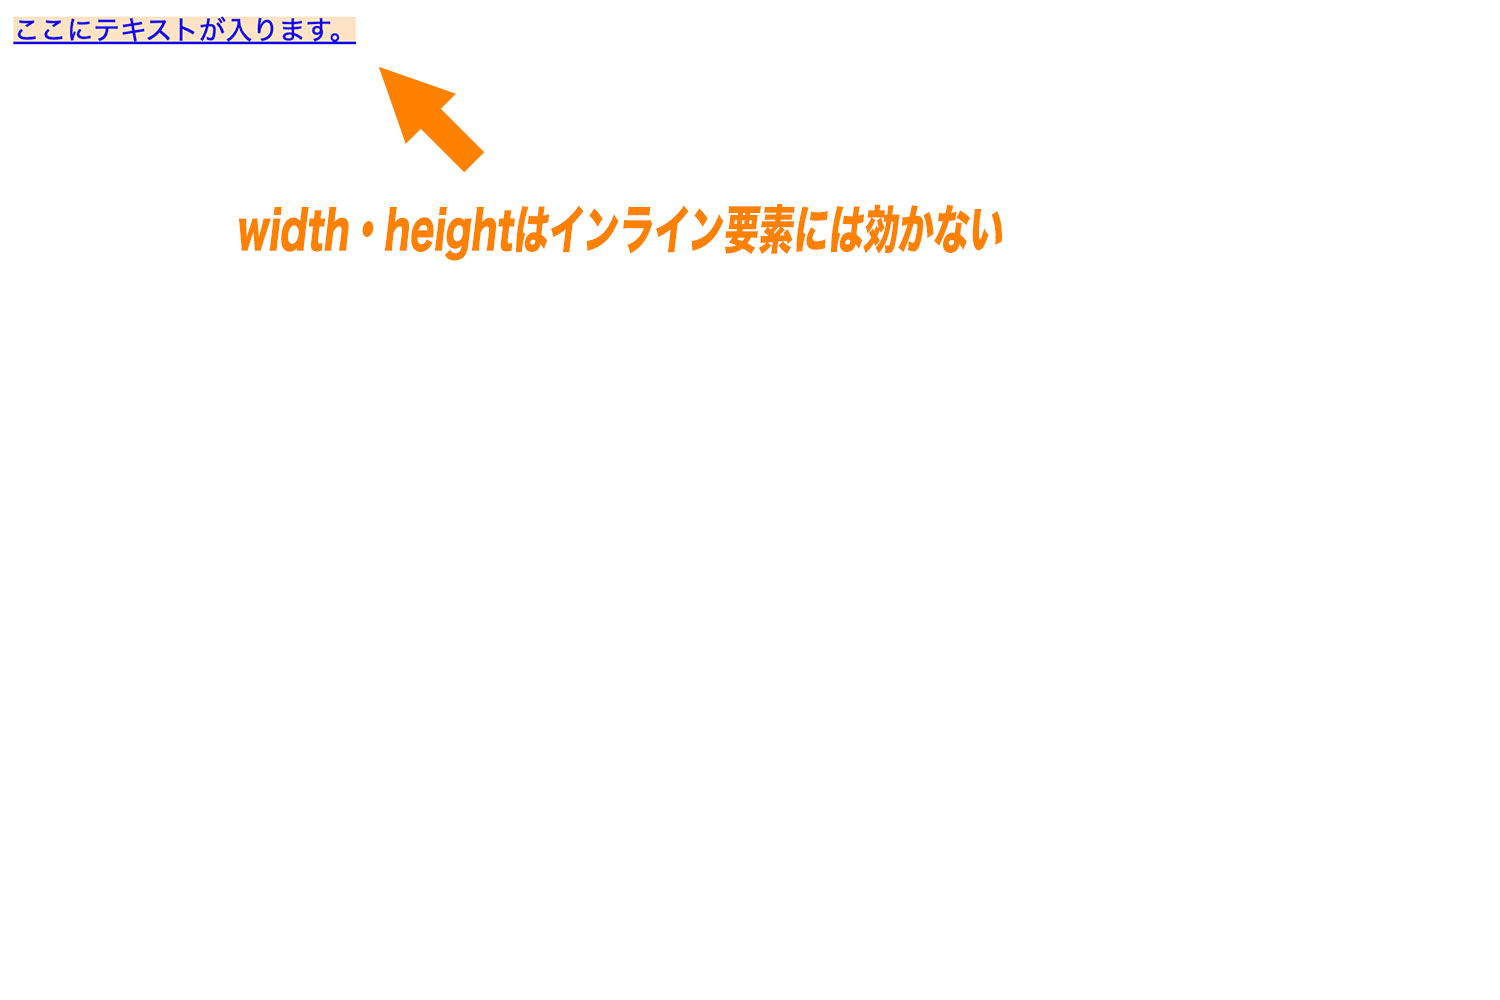 width・heightはインライン要素に対しては効かないデモ。